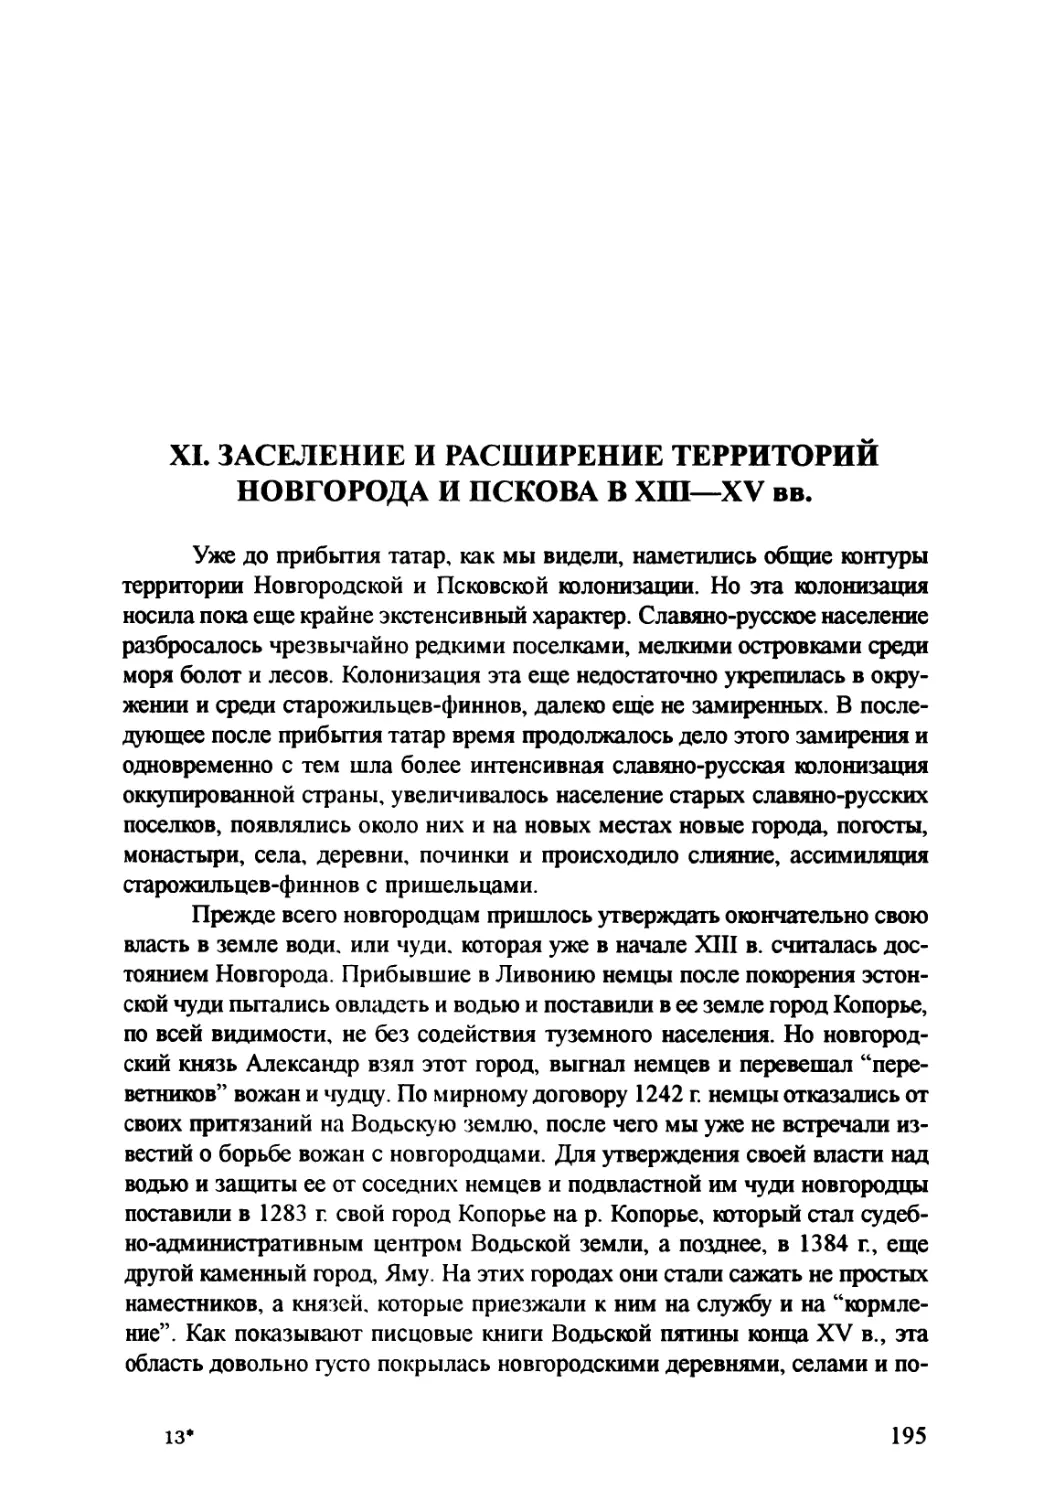 XI. Заселение и расширение территорий Новгорода и Пскова в ХIII—XV вв